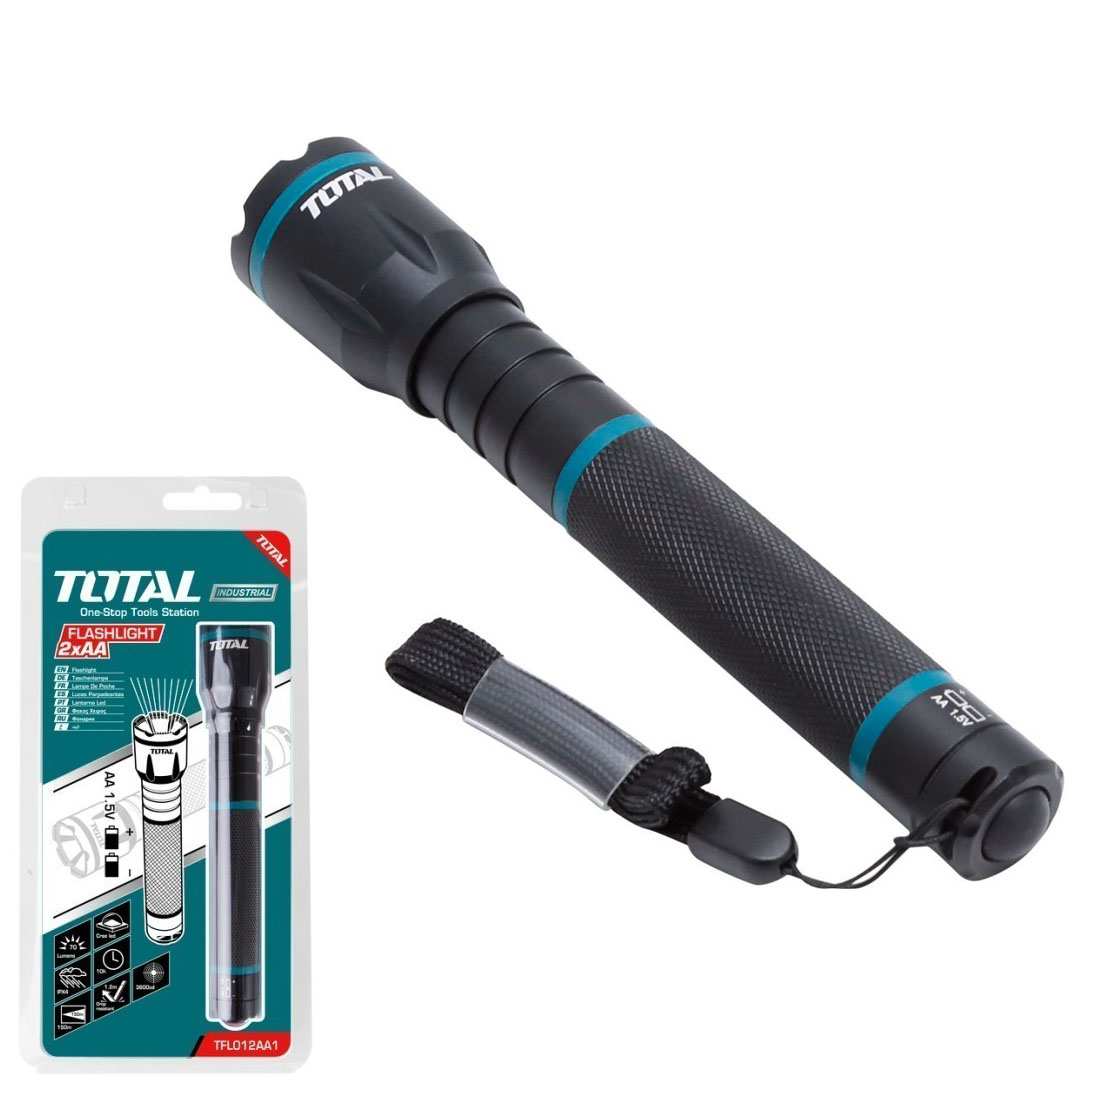 Total TFL 013AAA1 thuộc loại đèn công nghiệp loại nhỏ sử dụng hiệu điện 1.5V